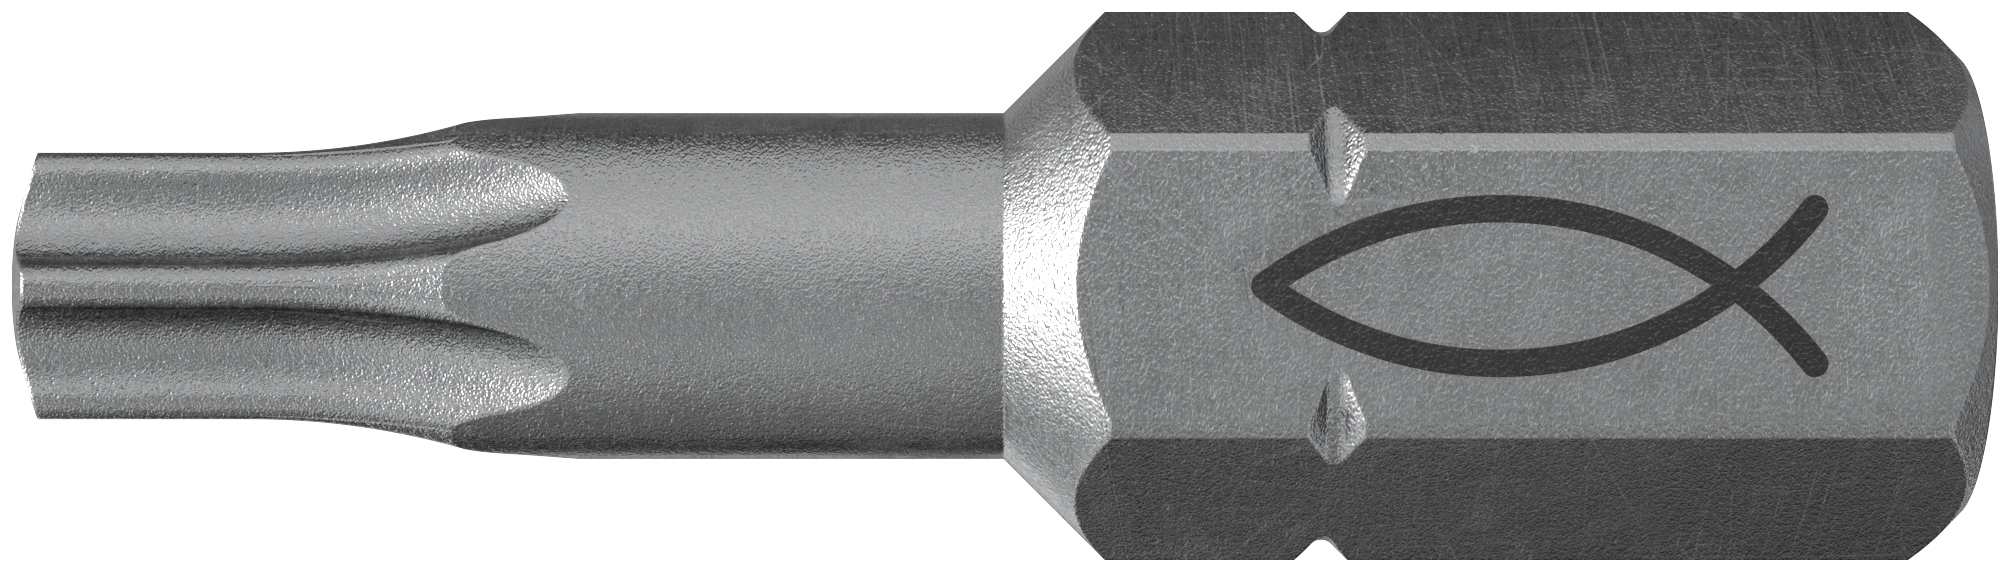 fischer Inserto per avvitatore FPB T 30 PROFI Bit W 10 (10 Pz.) L'inserto per trapano e avvitatore, in acciaio di alta qualit con elevata resistenza all?abrasione per uso professionale.